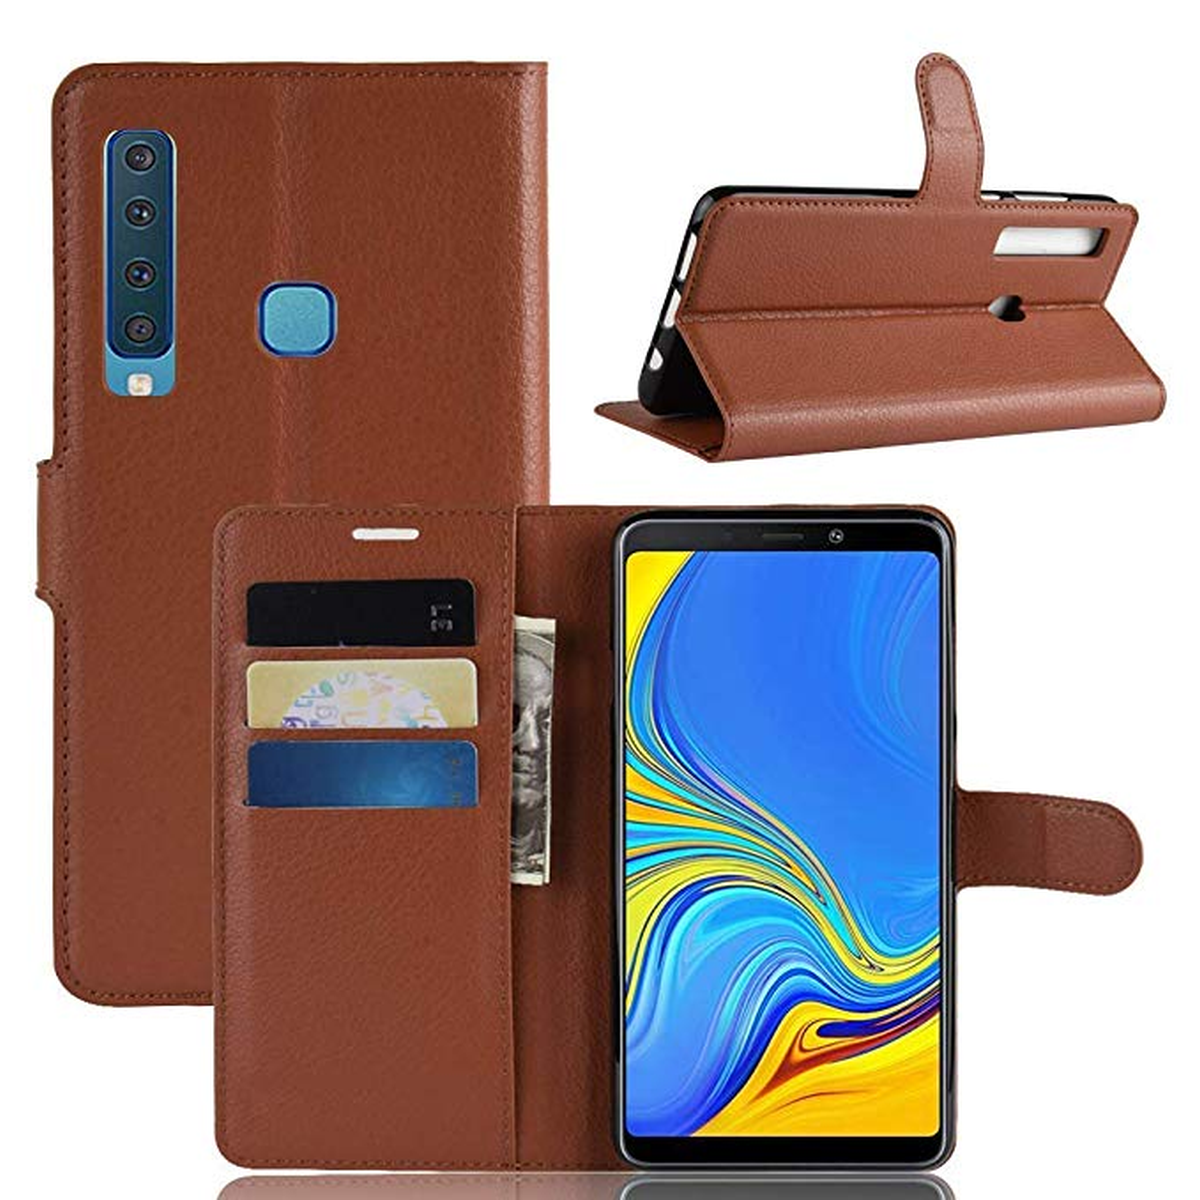 Samsung Galaxy A9 leather case